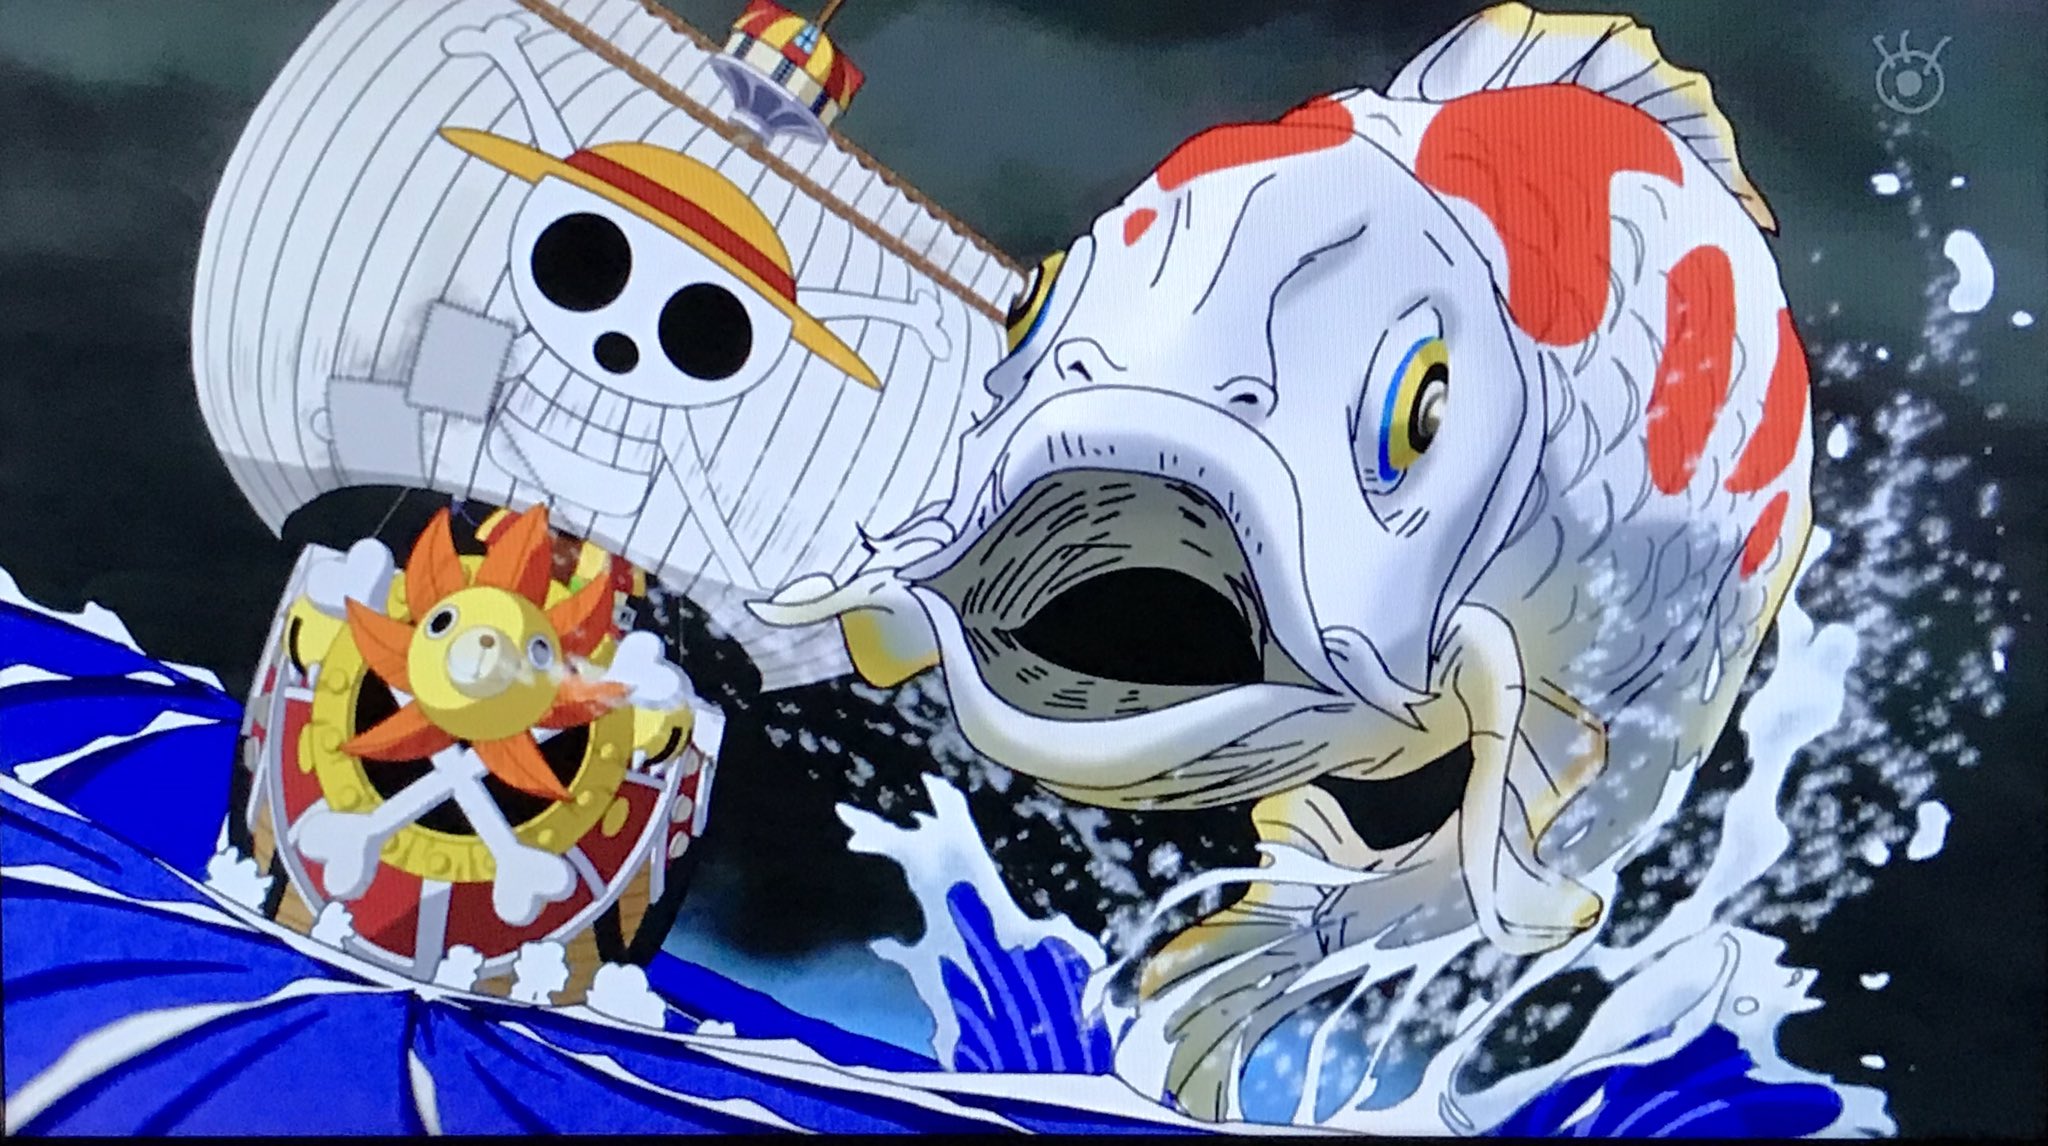 Kei One Piece垢 録画してた今日のアニワン観たんだけど 作画が凄すぎてヤバイ この浮世絵 な感じも良いし 鯉もかなりリアル 波 もそうだけど ナミさんもめちゃくちゃ美しくてかわいかった 笑 あと タコ が出てきてからの Bgmも和風っ